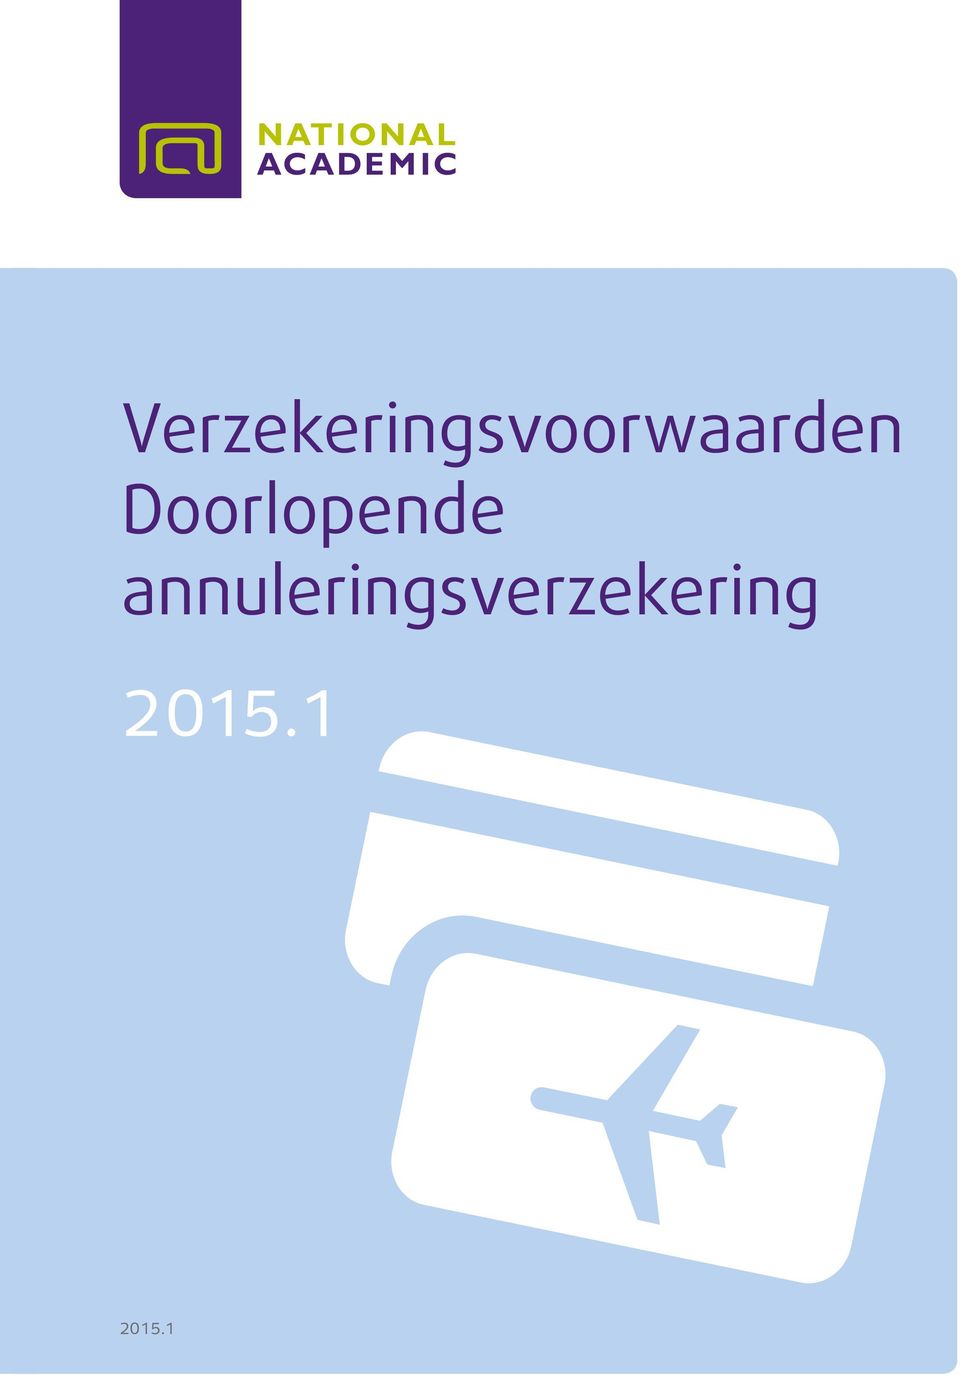 Doorlopende annuleringsverzekering 2014 2015.